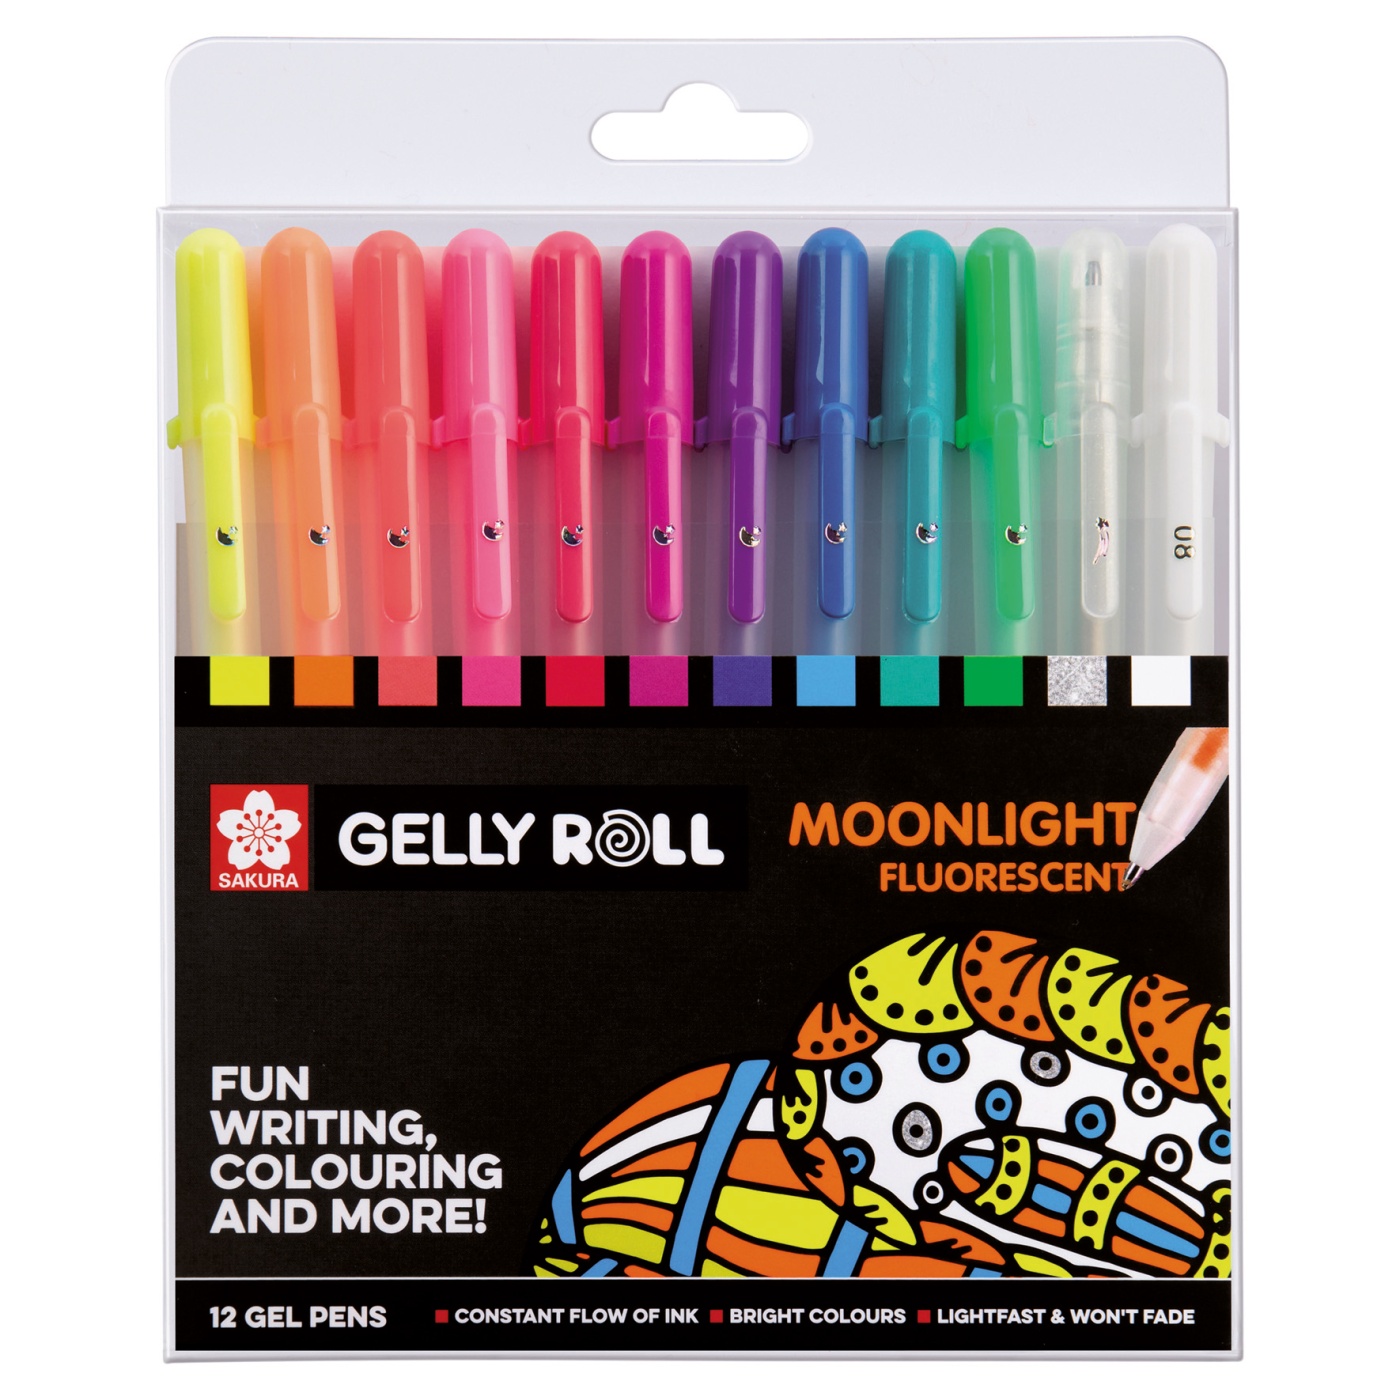 Sakura Gelly Roll Moonlight & White 12 pens Set w/Case XPGB-12ML Registered Ship 